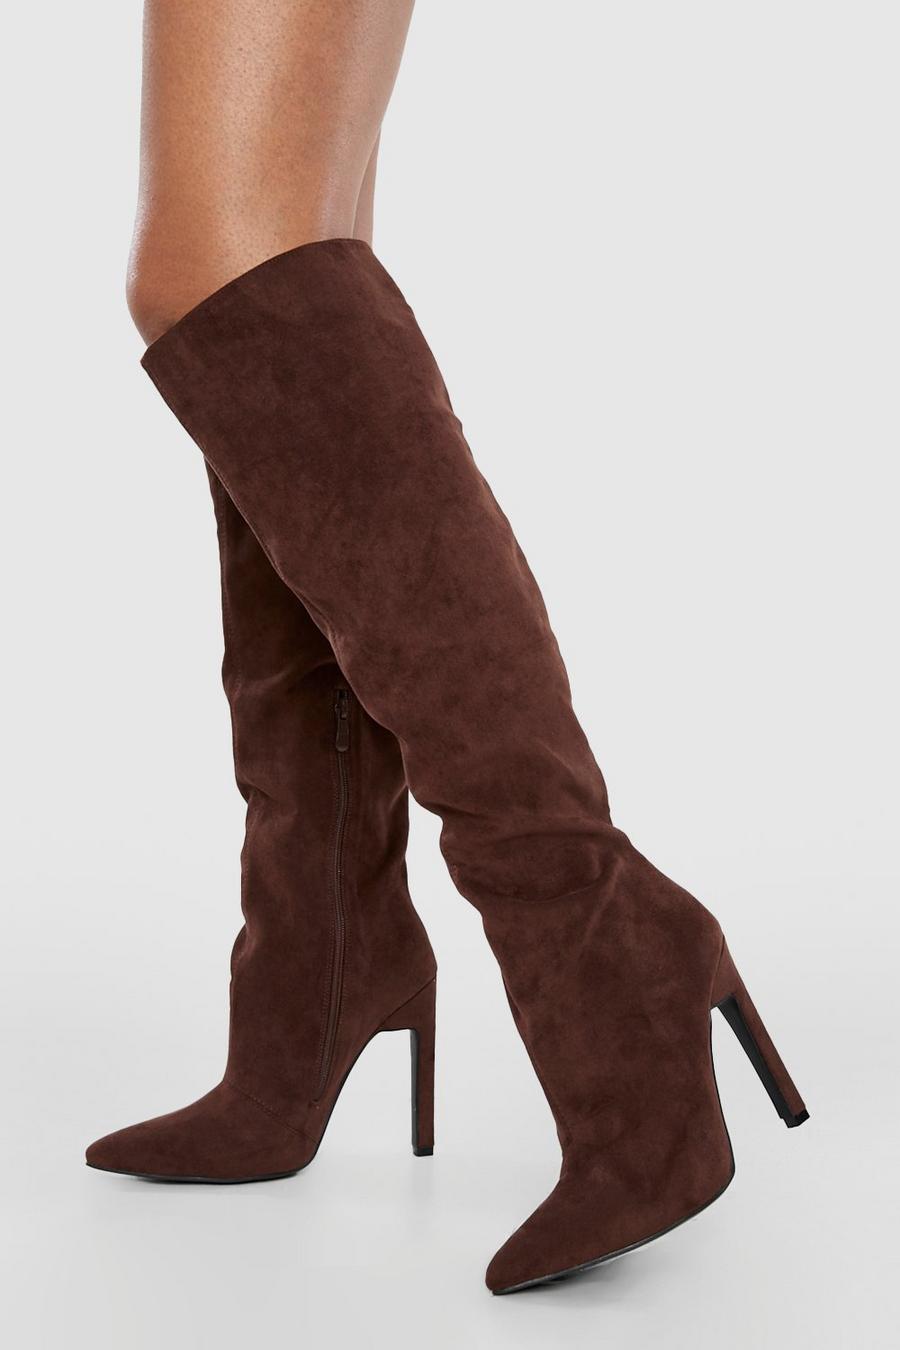 Chocolate brown Skinny Block Heel Pointed Toe Knee High Boots